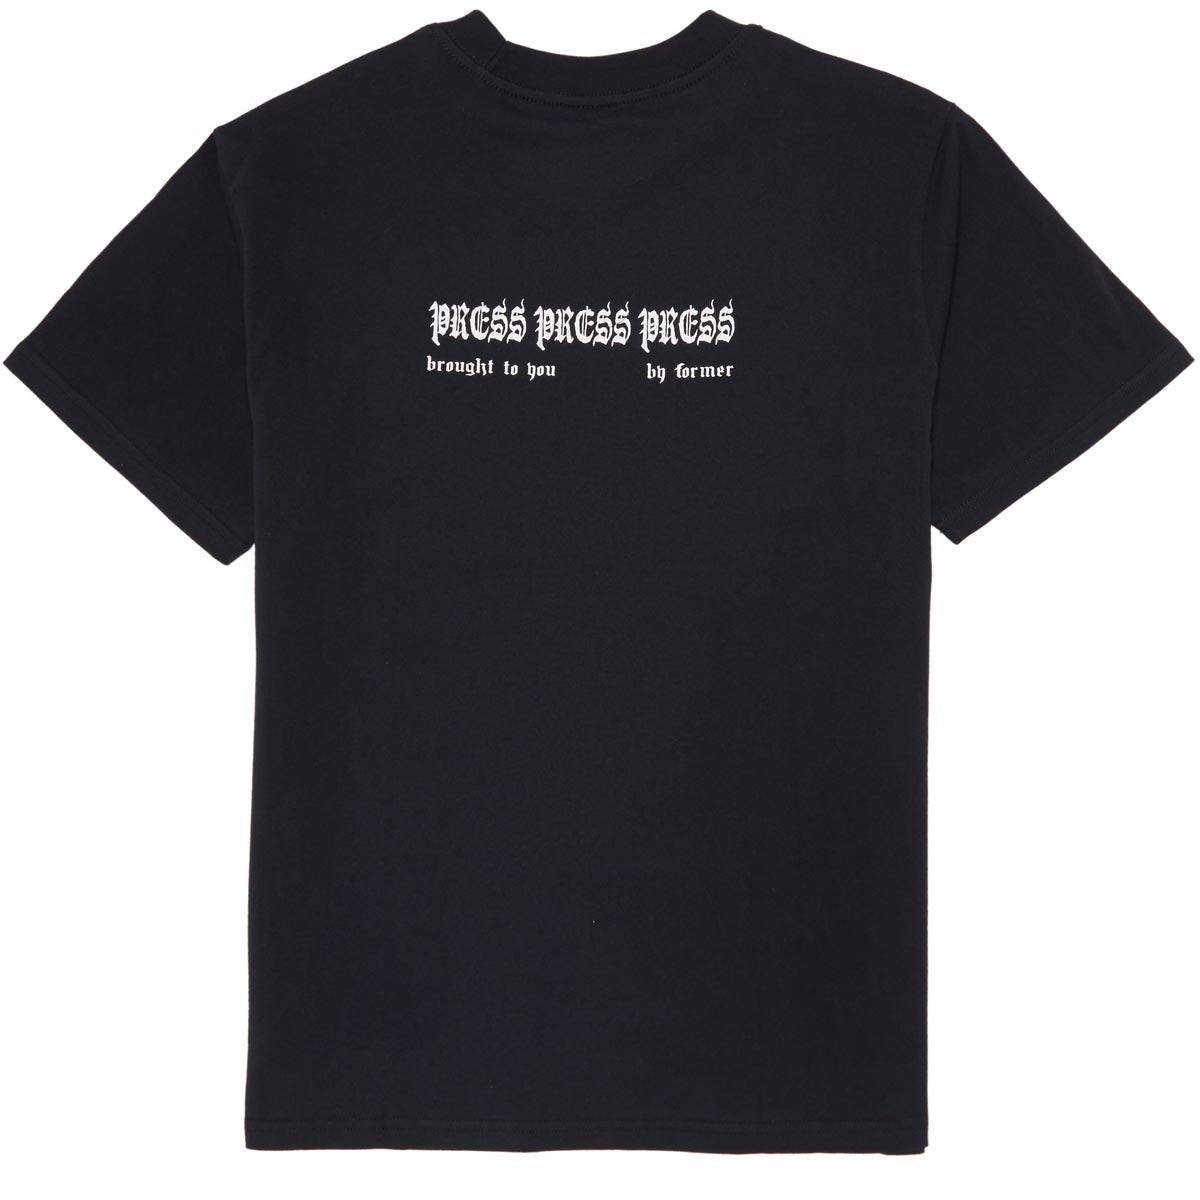 Former Press T-Shirt - Black image 1